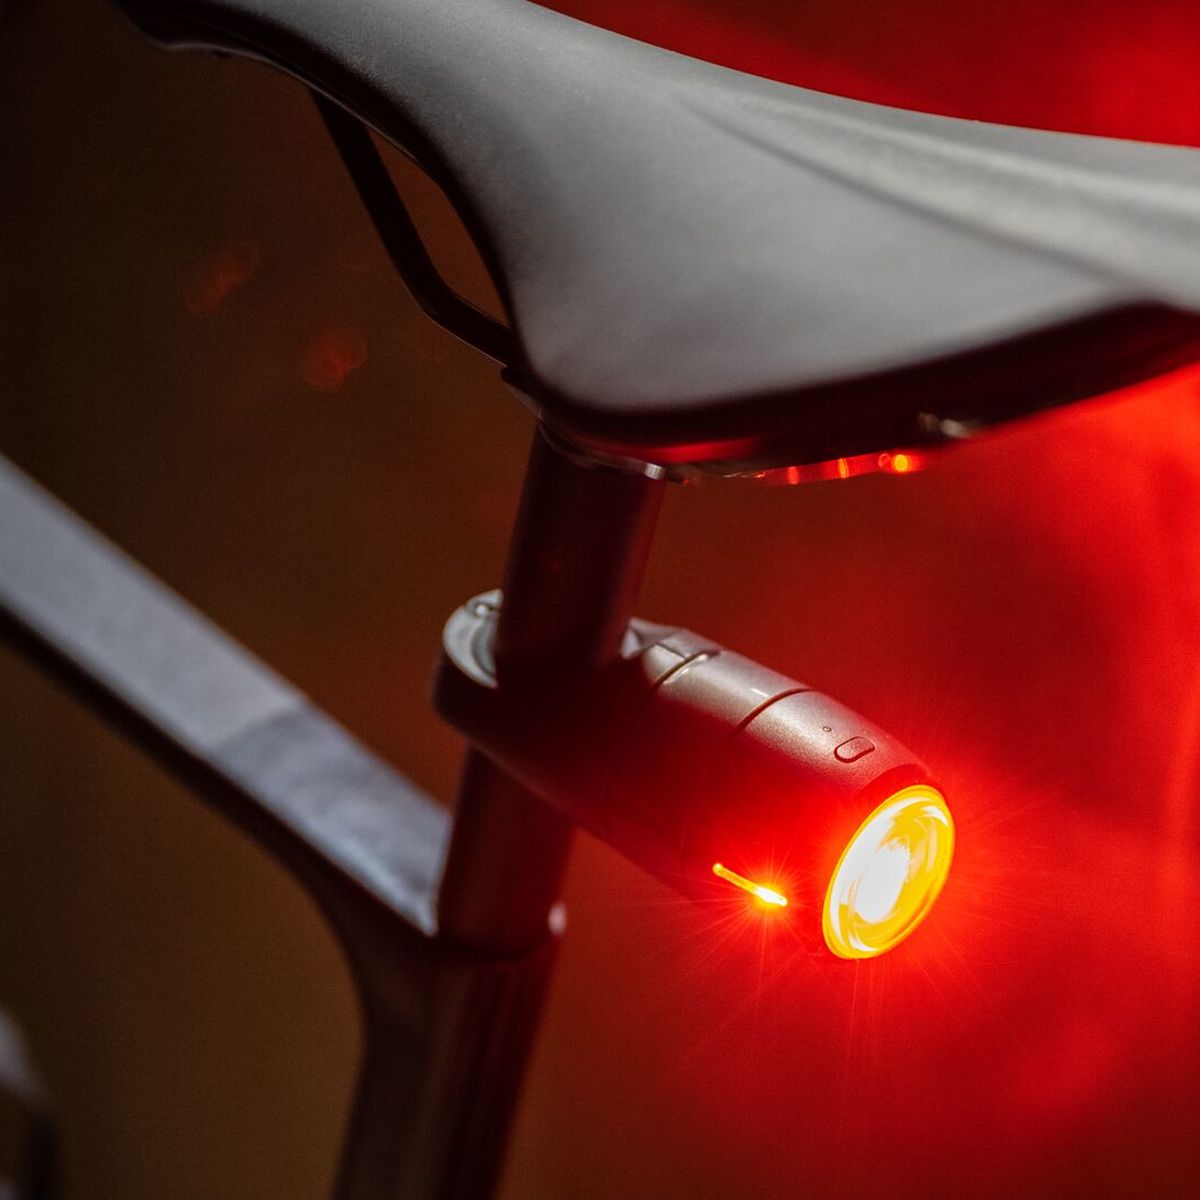 Curve Bike, la luz de freno inteligente y localizador GPS que te